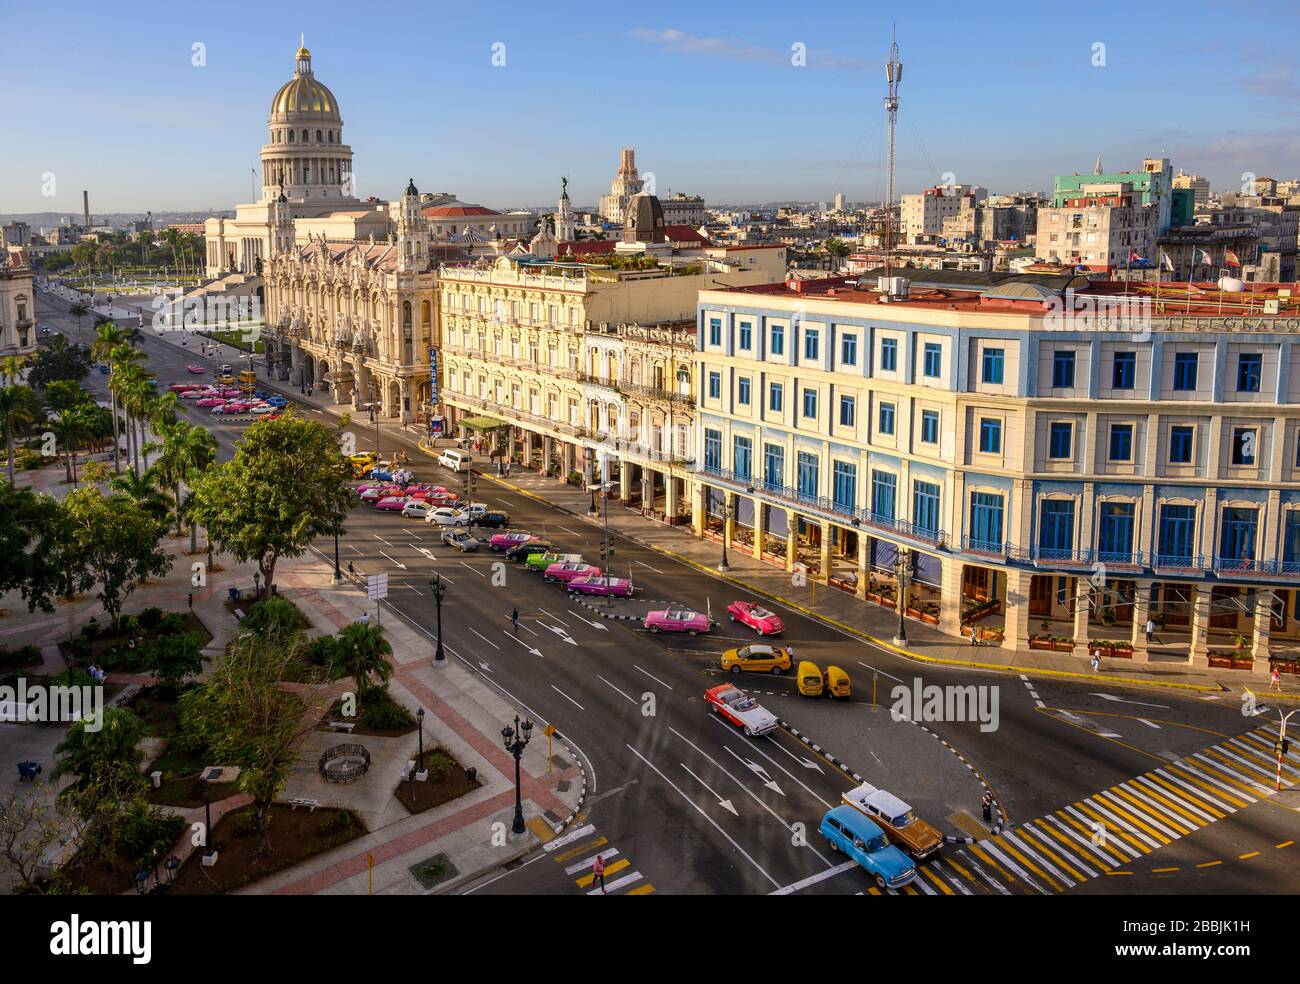 Parque Centrale mit El Capitolio oder dem nationalen Kapitolgebäude, dem Gran Teatro de La Habana und dem Hotel Inglaterra und dem Hotel Telegrafo, Havanna, Kuba Stockfoto